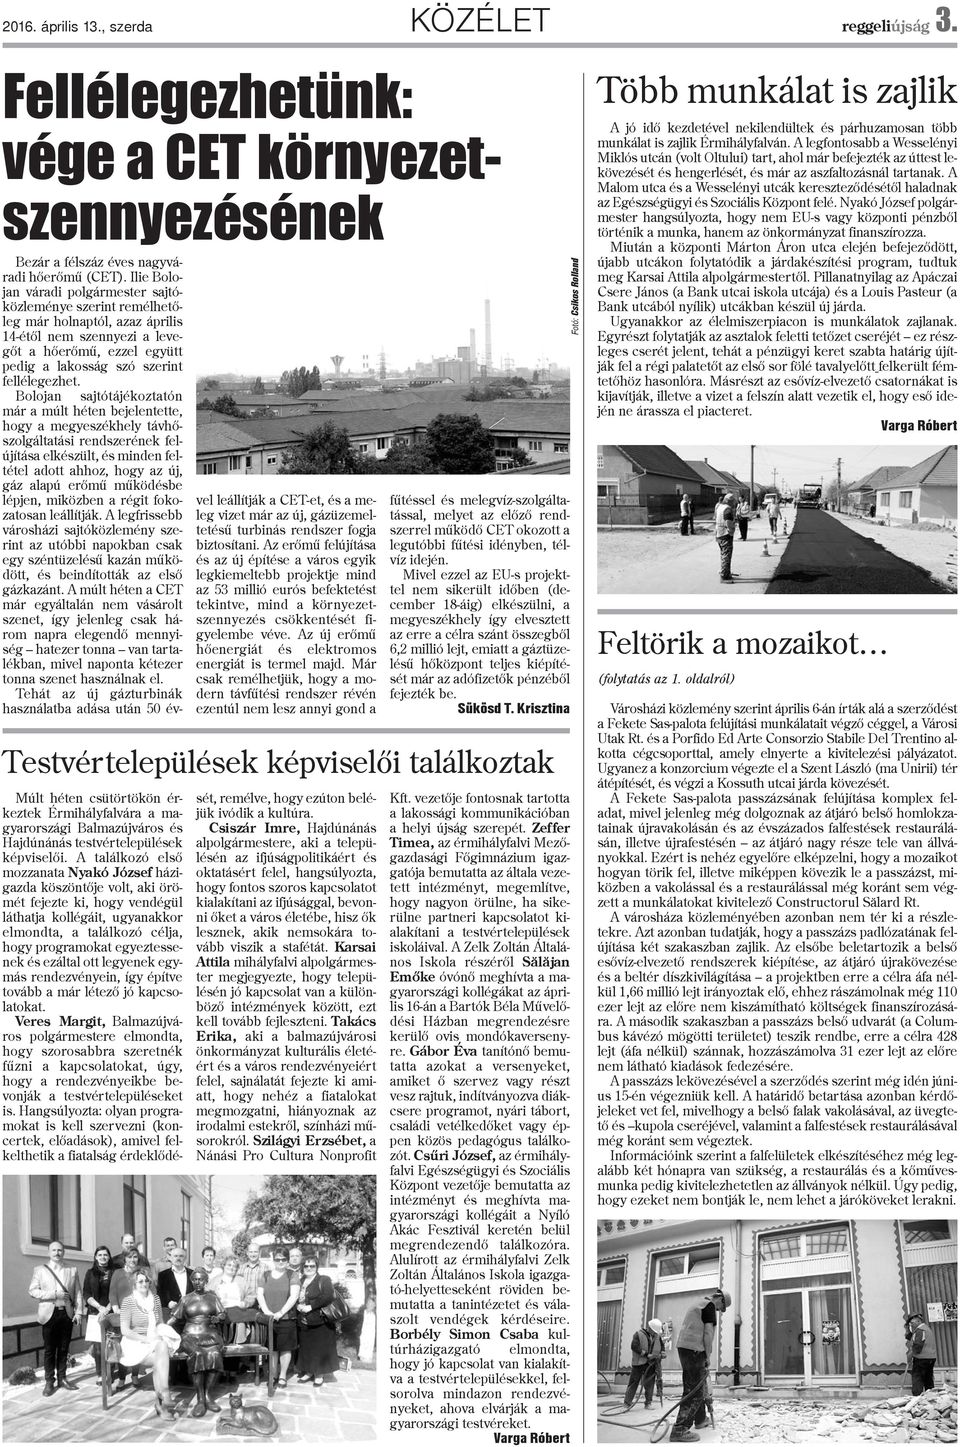 Bolojan sajtótájékoztatón már a múlt héten bejelentette, hogy a megyeszékhely távhõszolgáltatási rendszerének felújítása elkészült, és minden feltétel adott ahhoz, hogy az új, gáz alapú erõmû